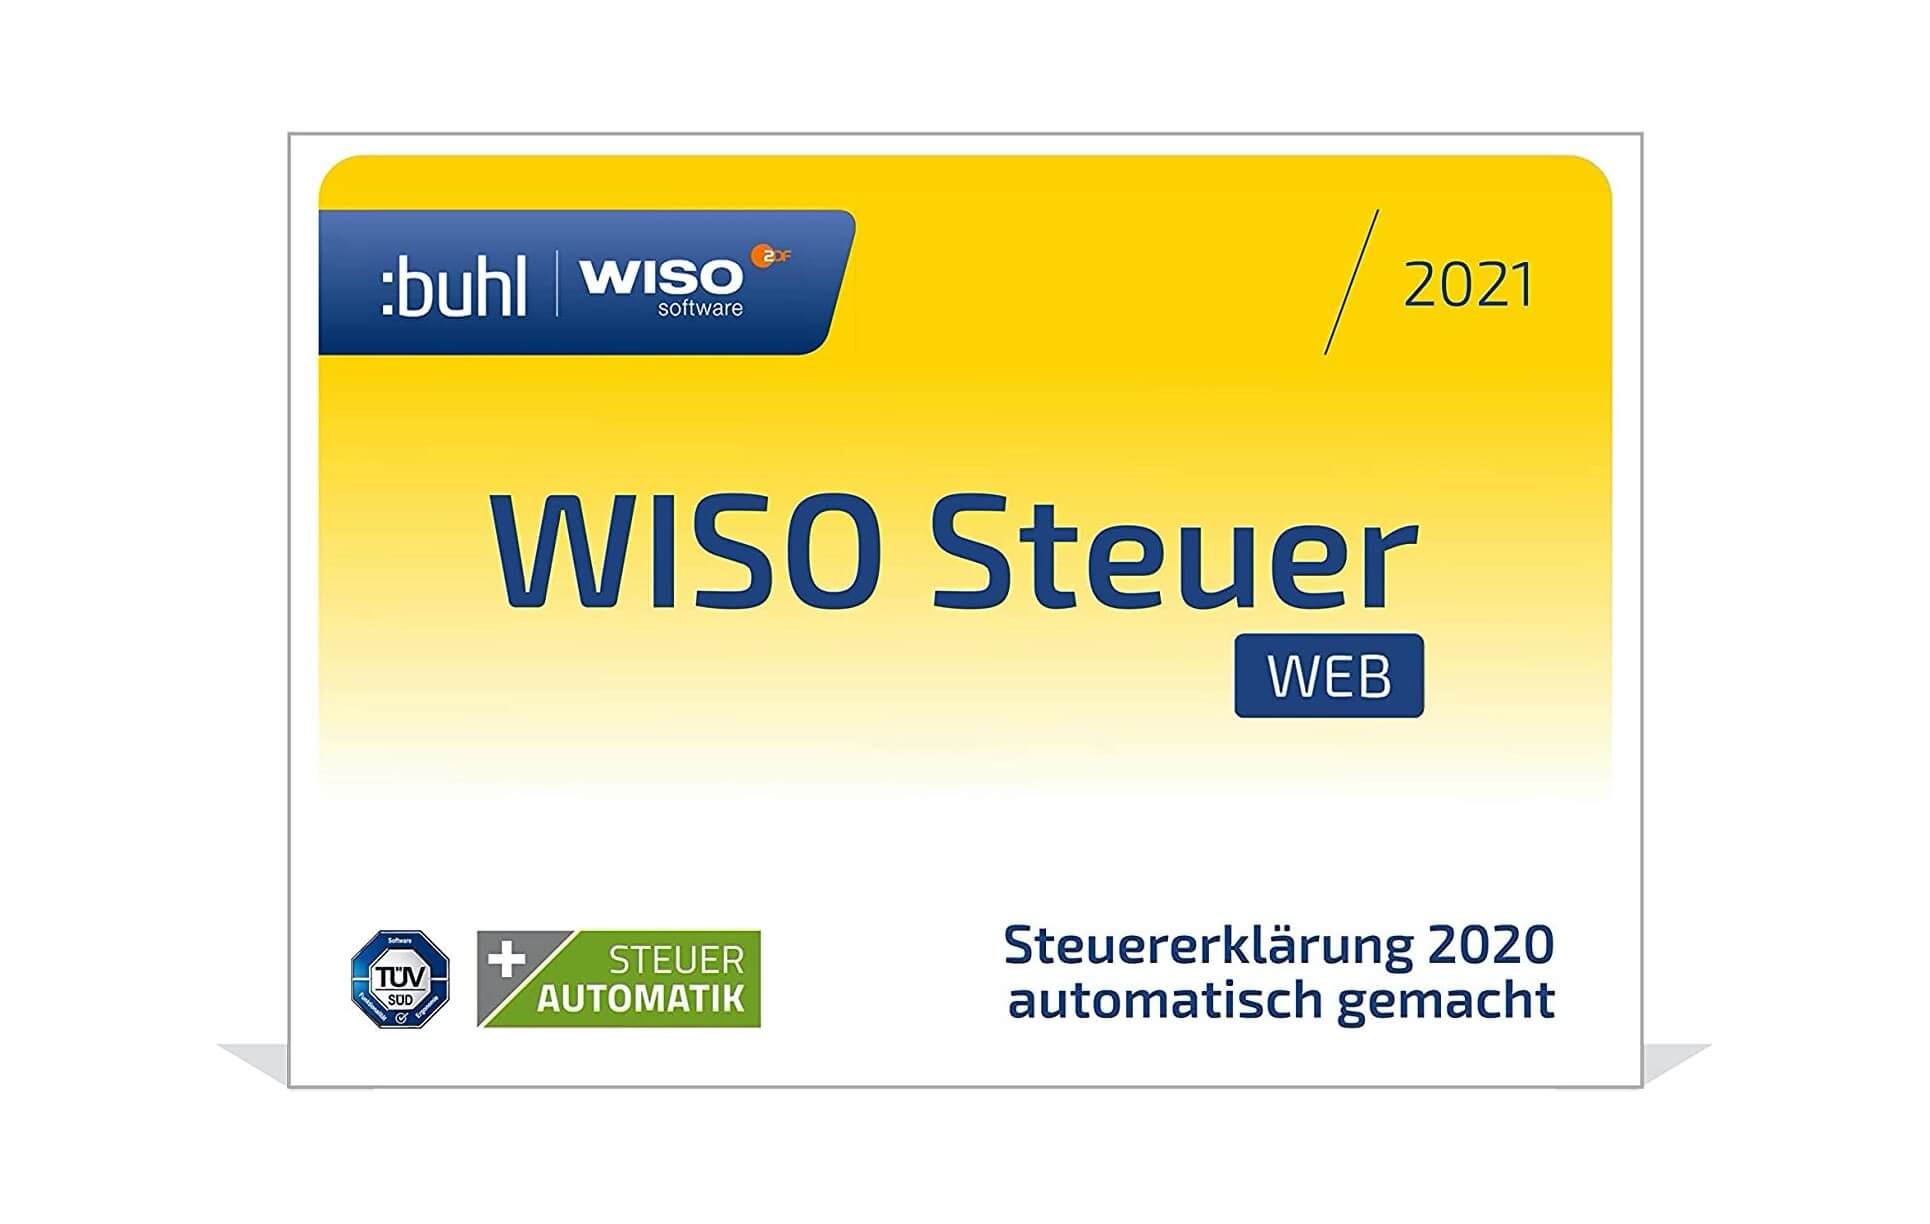 德国最受欢迎的报税软件web版 Wiso Steuer Web 21 报税软件浏览器版 用于年申报报税 到手 99欧 原价39 99欧 21 05 17 德亚打折特价活动 德国买买买